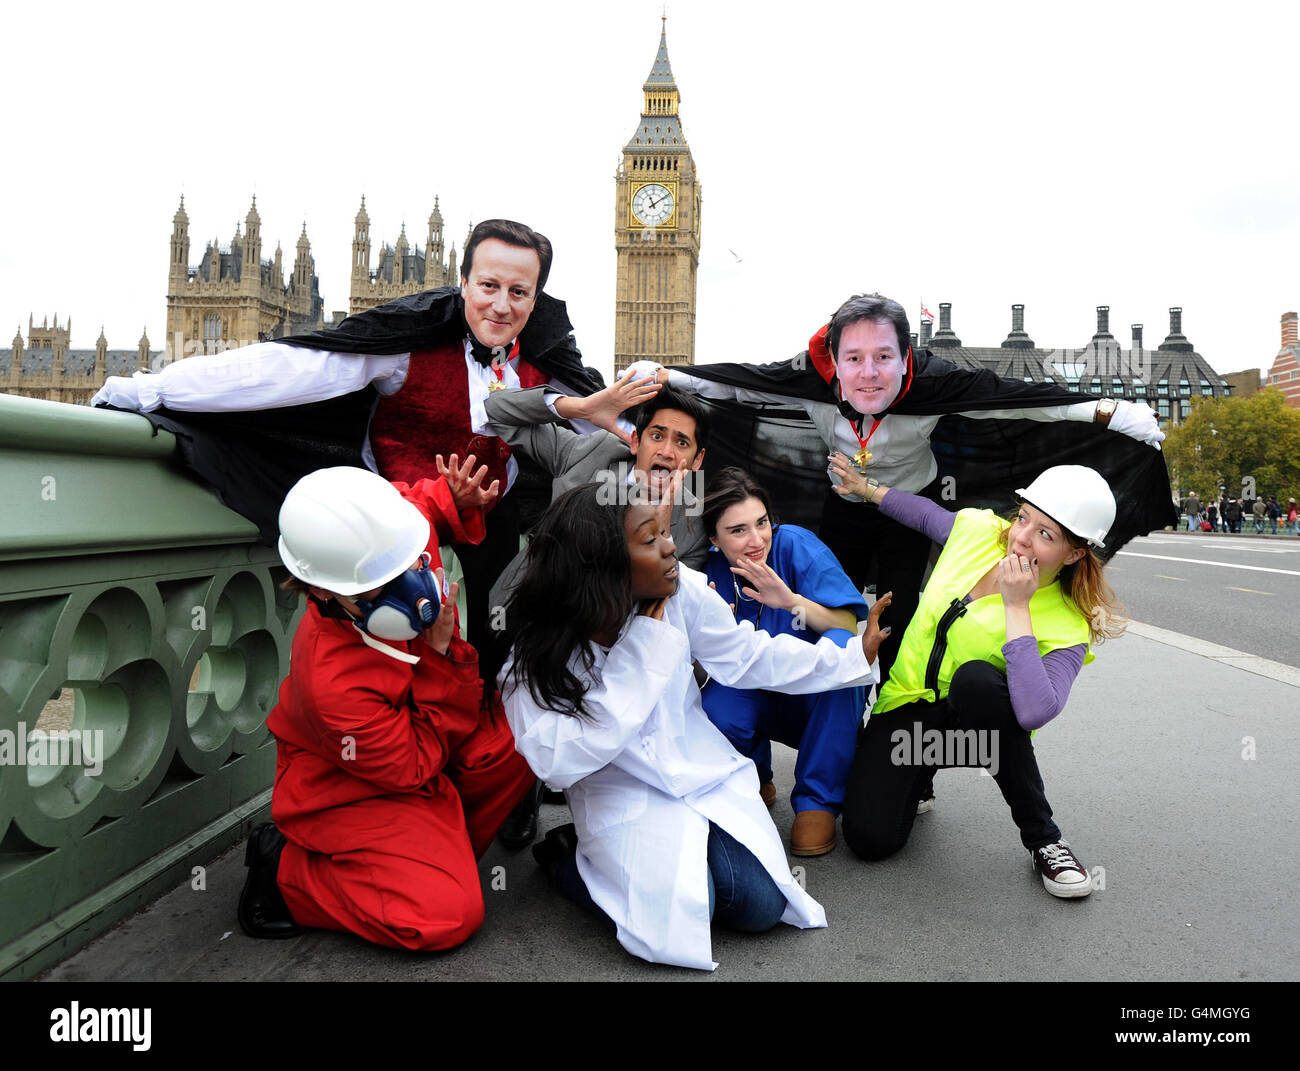 Zwei Unison-Demonstranten mit David Cameron und Nick Clegg maskiert als Vampire, während einer Fotozelle auf der Westmister Bridge im Zentrum von London, Nehmen Sie einen "Bissen" aus dem öffentlichen Sektor Arbeitnehmer zu betonen, die Behauptung der Gewerkschaft, dass jeder fünfte Menschen leiden wird, wenn die Regierung führt ihre öffentlichen Sektor Rentenreform. Stockfoto